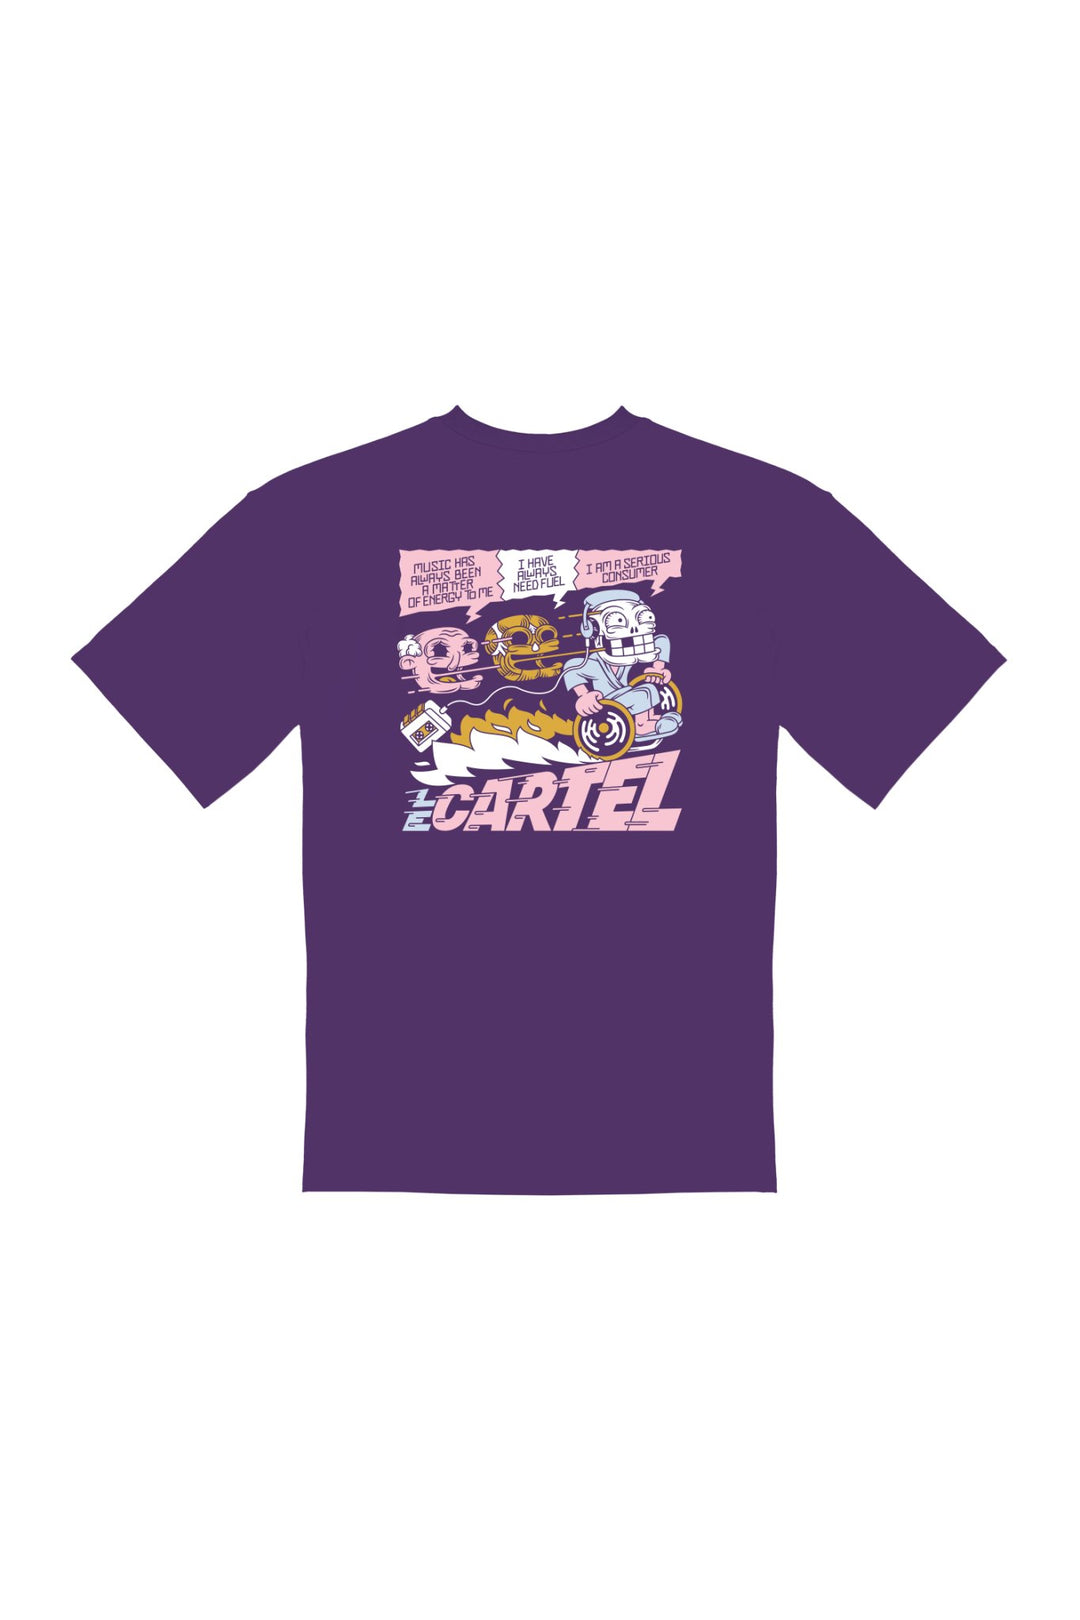 SERIOUS CONSUMER・T - shirt unisexe・Violet - Le Cartel